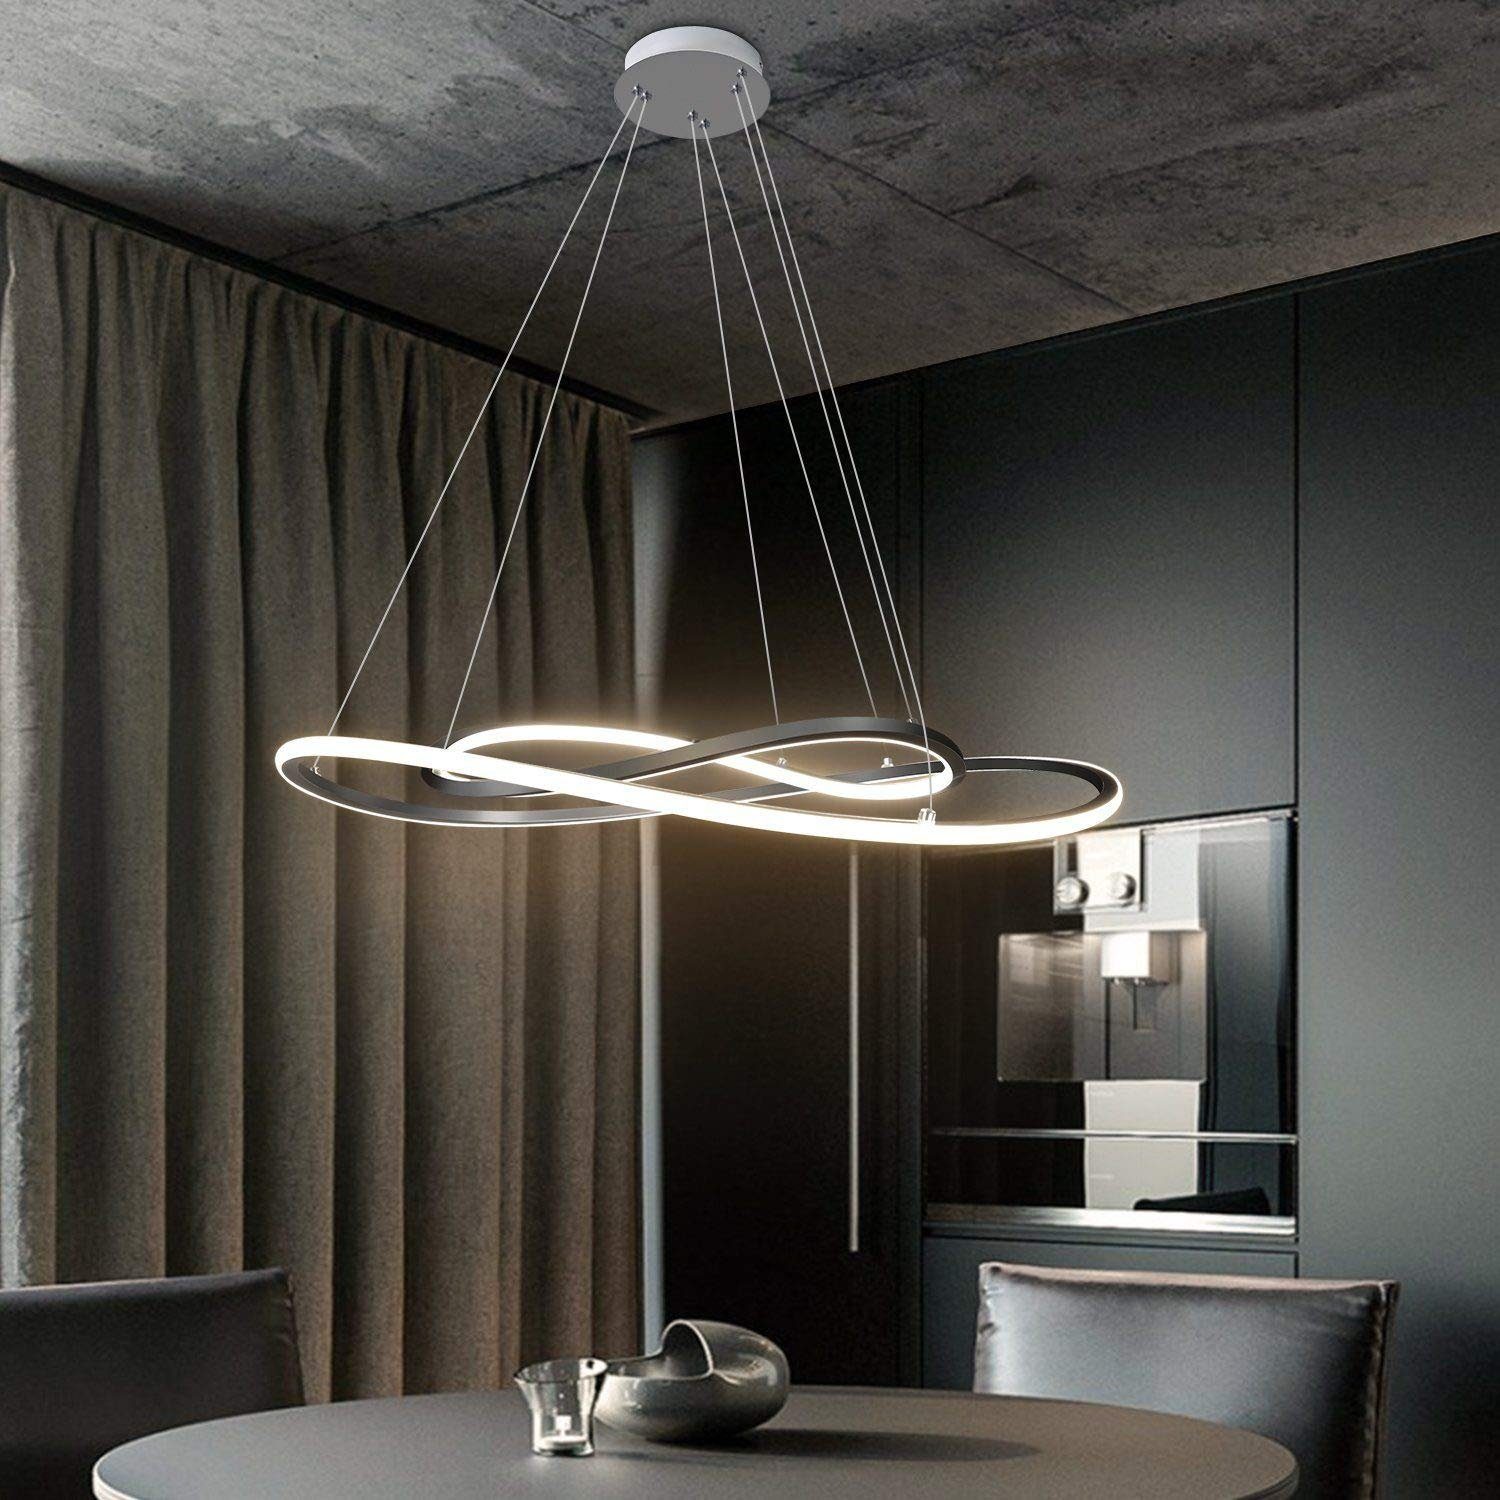 LED Luxus Pendel Lampe Ess Tisch Wohn Raum Leuchte Hänge Beleuchtung verstellbar